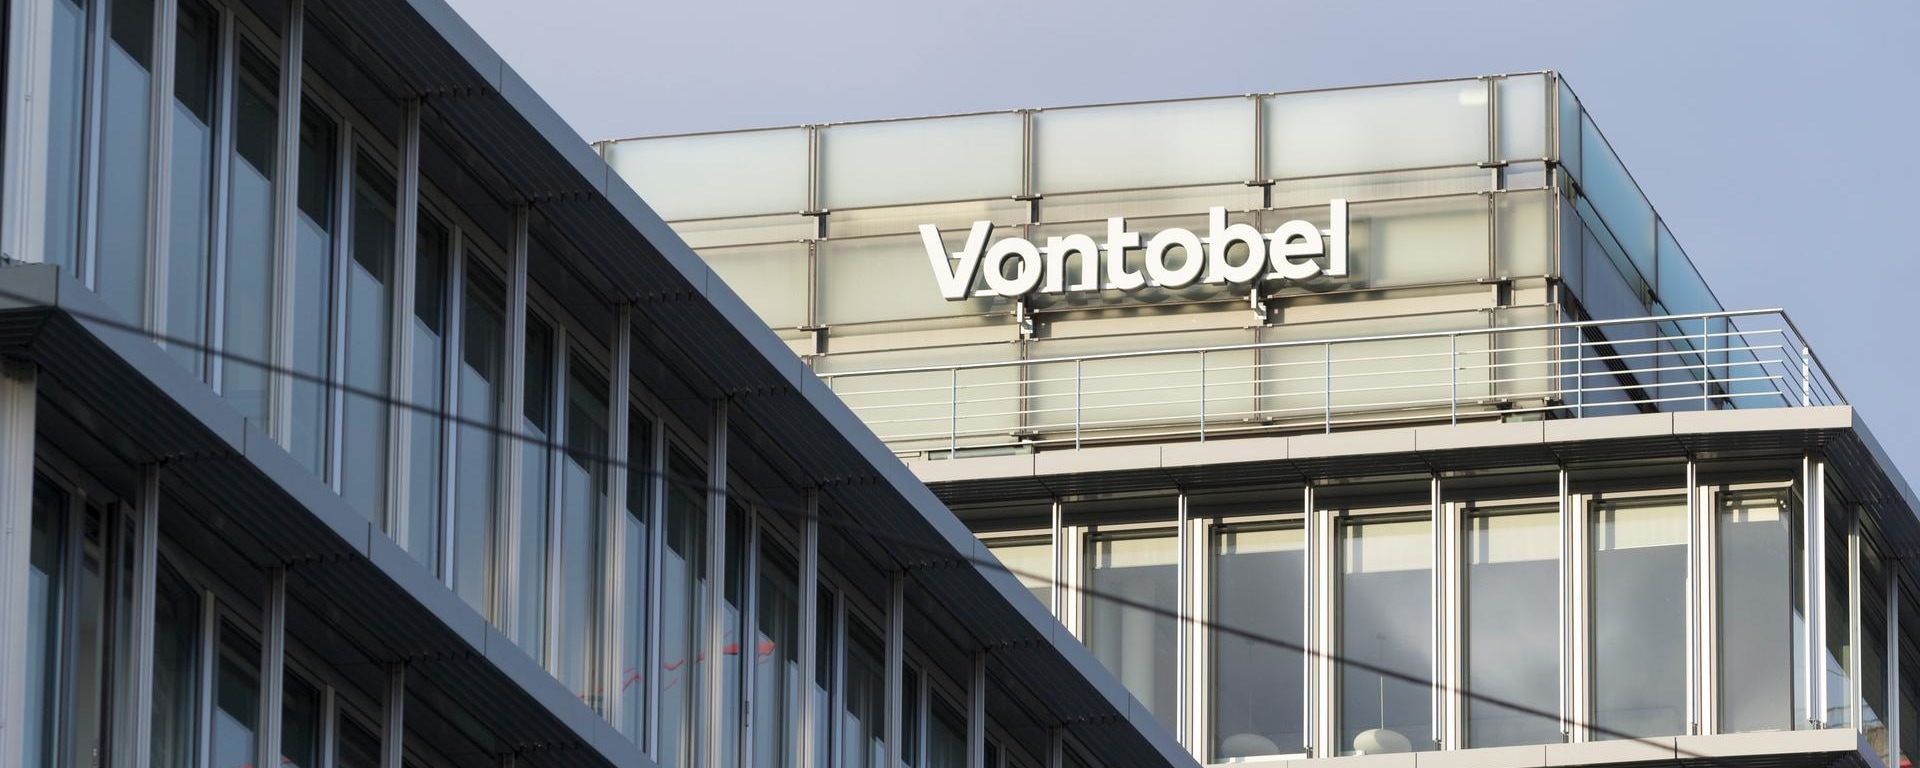 The headquarters of Bank Vontobel in Zurich, Switzerland.